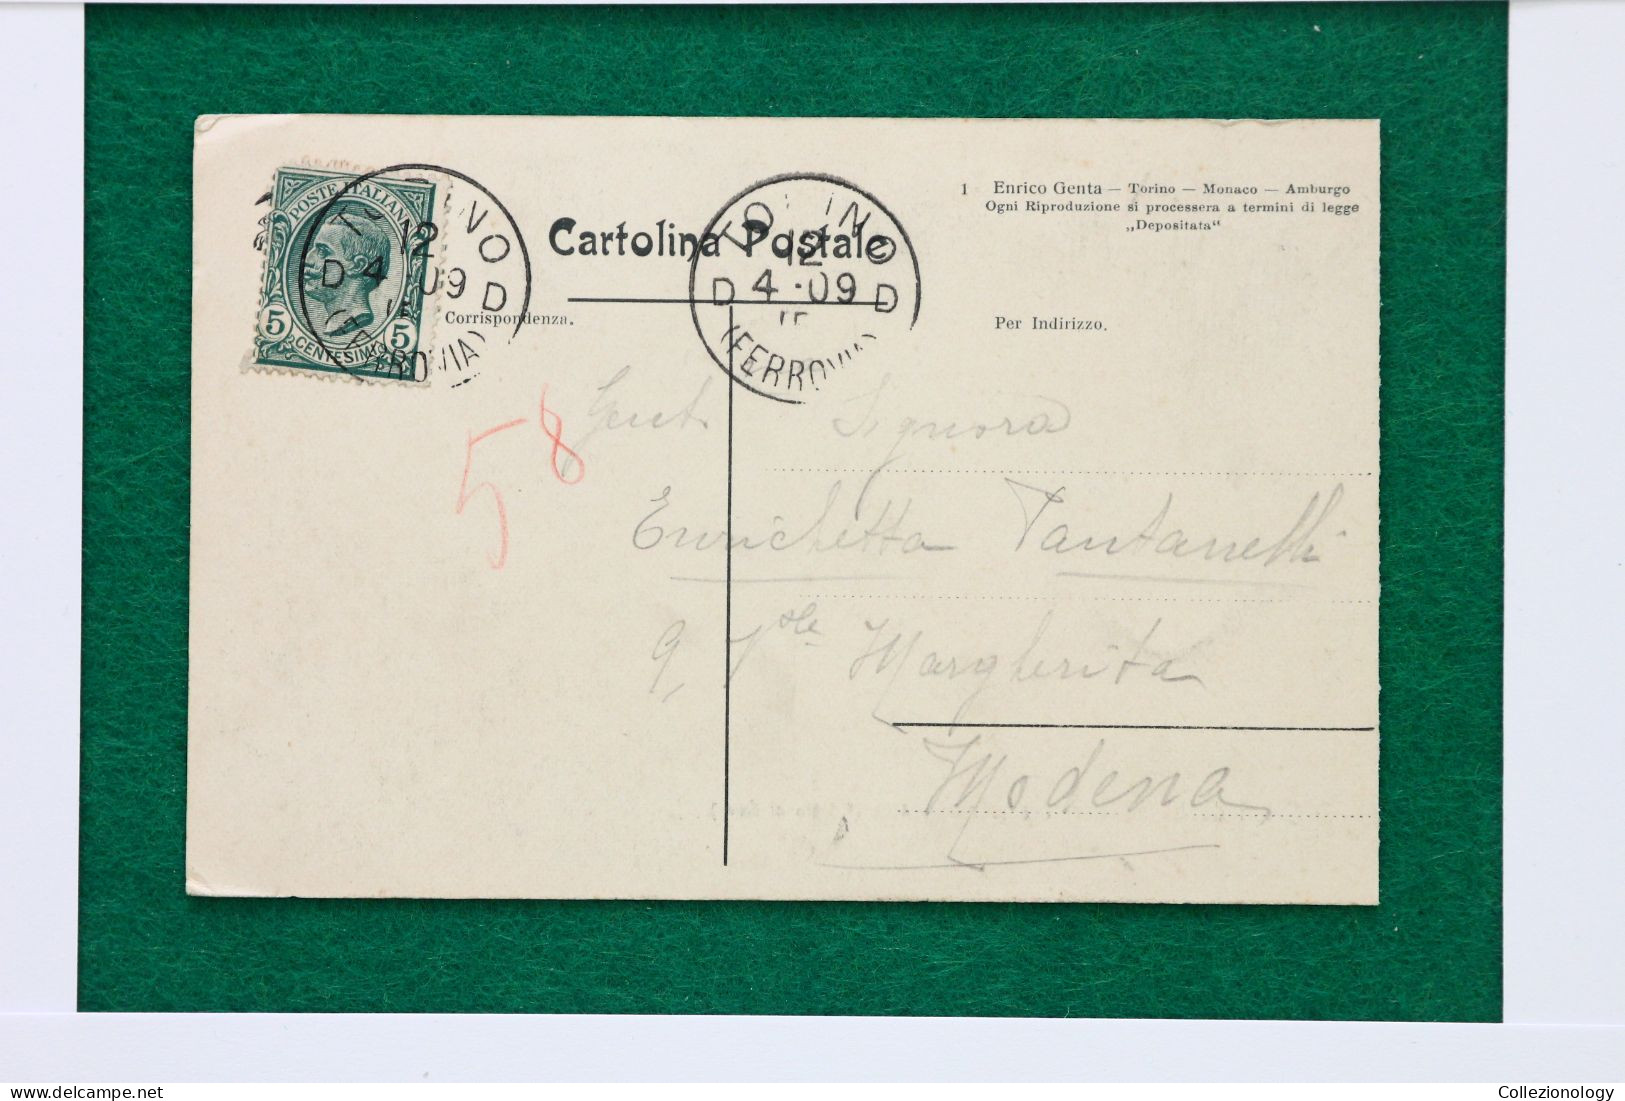 CARTOLINA POSTALE VIAGGIATA 1909 LANZO TORINESE (TORINO), PIEMONTE, ITALIA: EFFETTO DI NEVE 0022 POSTCARD - Tarjetas Panorámicas